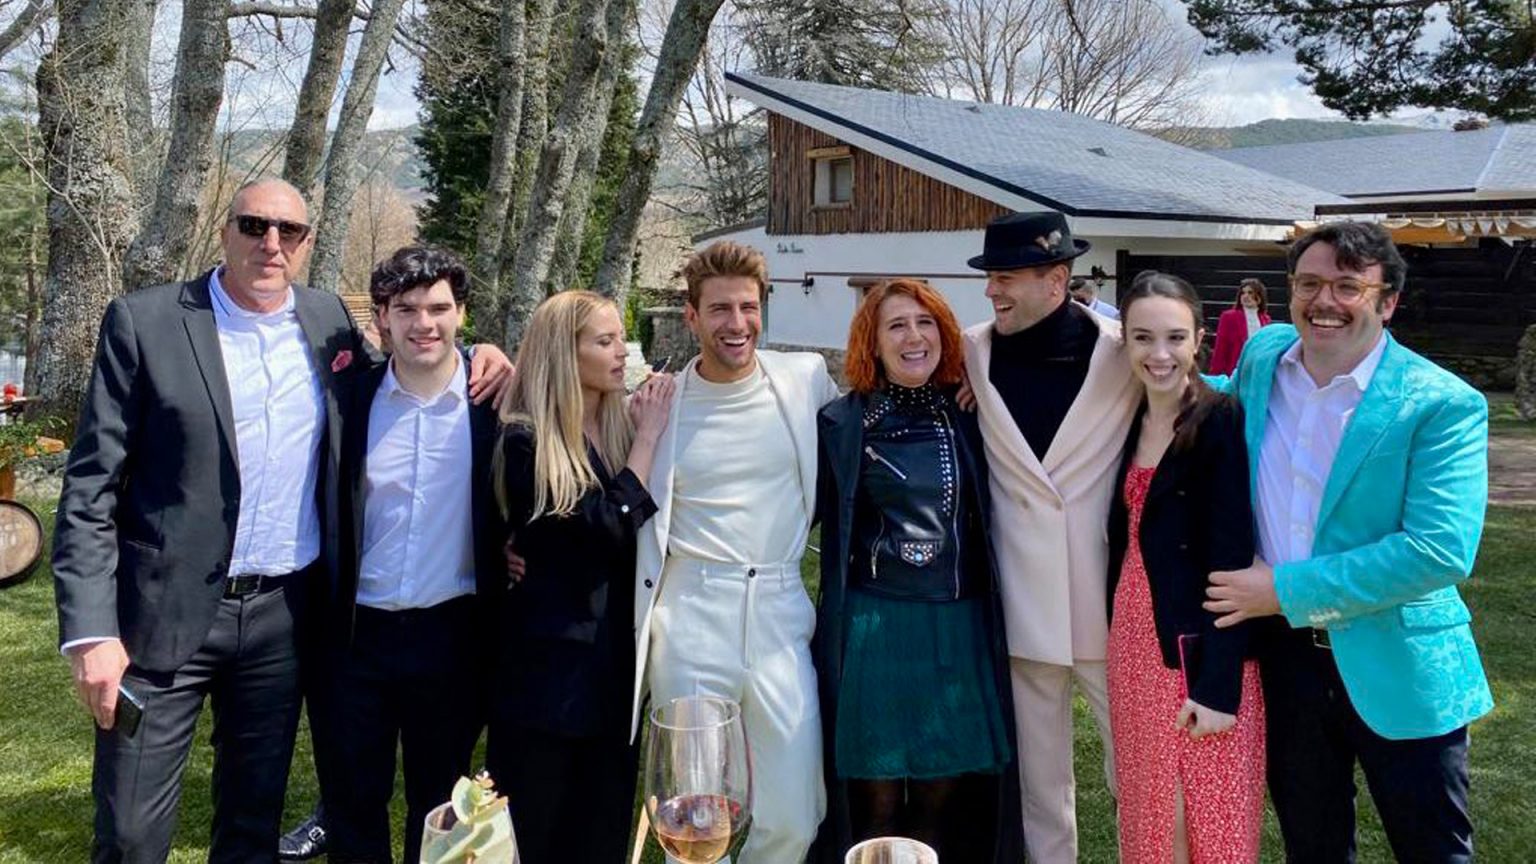 La boda de Mario Marzo reúne al casting de 'Los protegidos' casi al completo